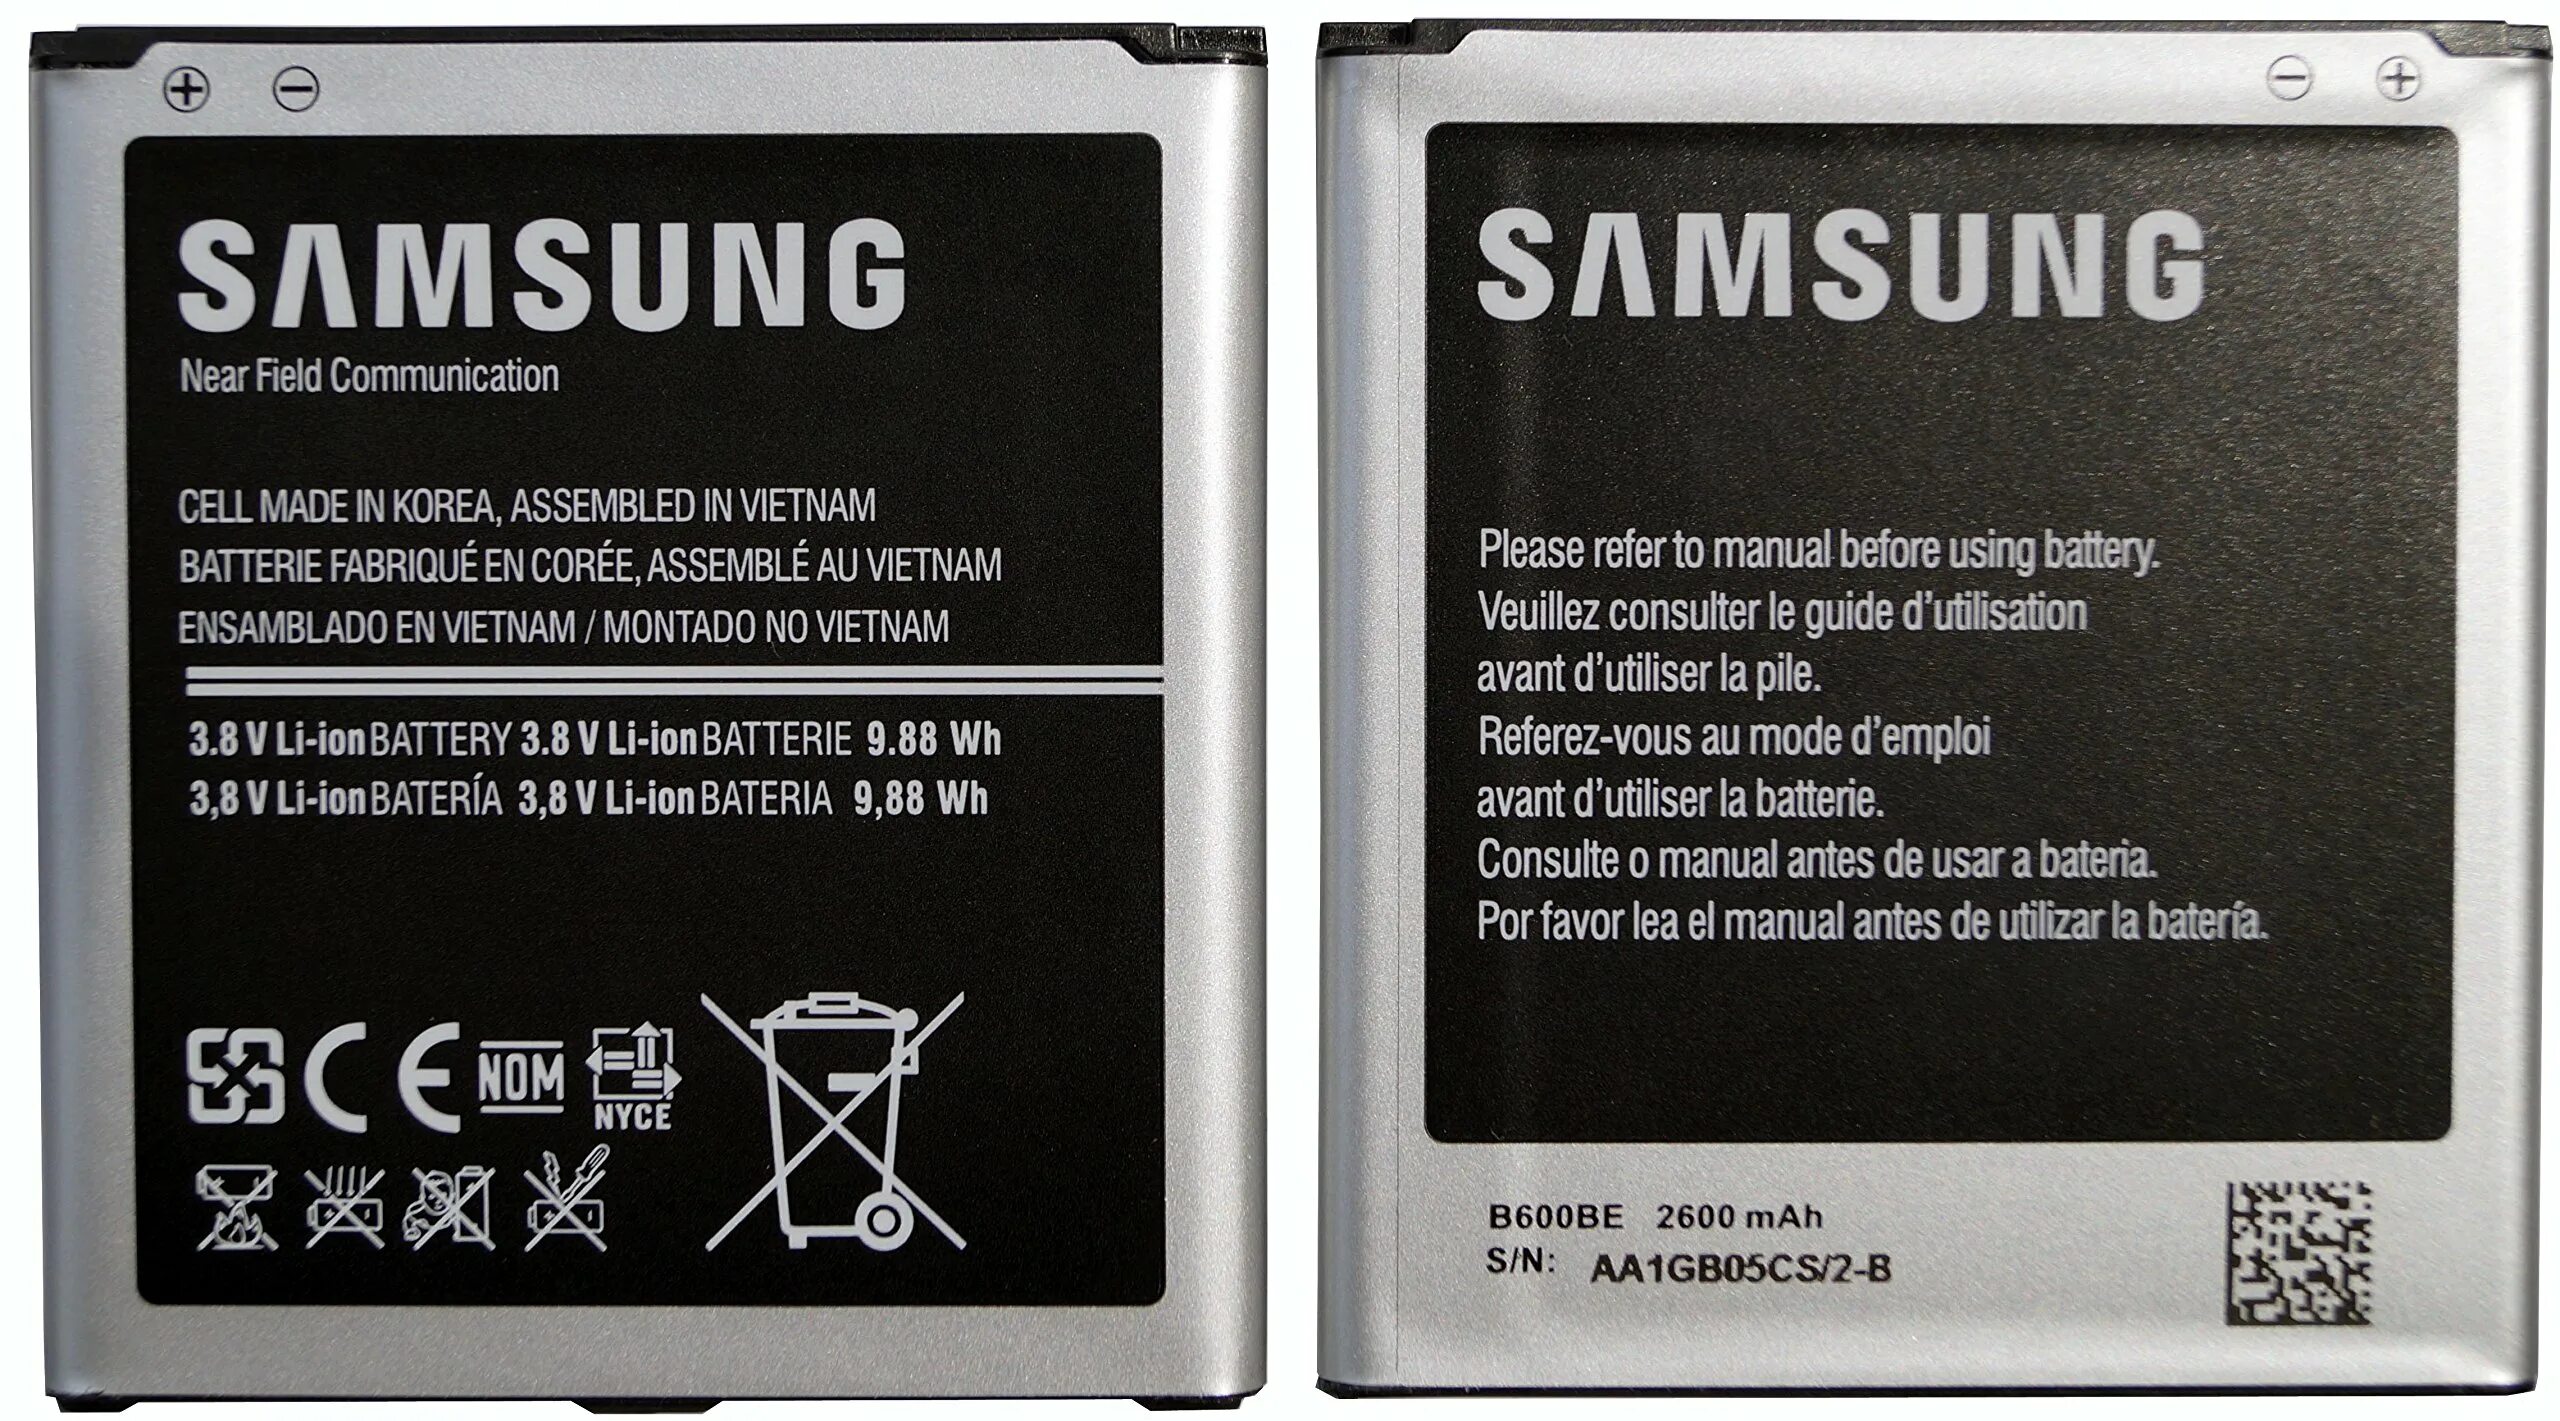 Купить аккумулятор для телефона самсунг галакси. Samsung Galaxy i9500 аккумулятор. Samsung АКБ 2600 Mah. Аккумуляторная батарея для Samsung Galaxy s5.